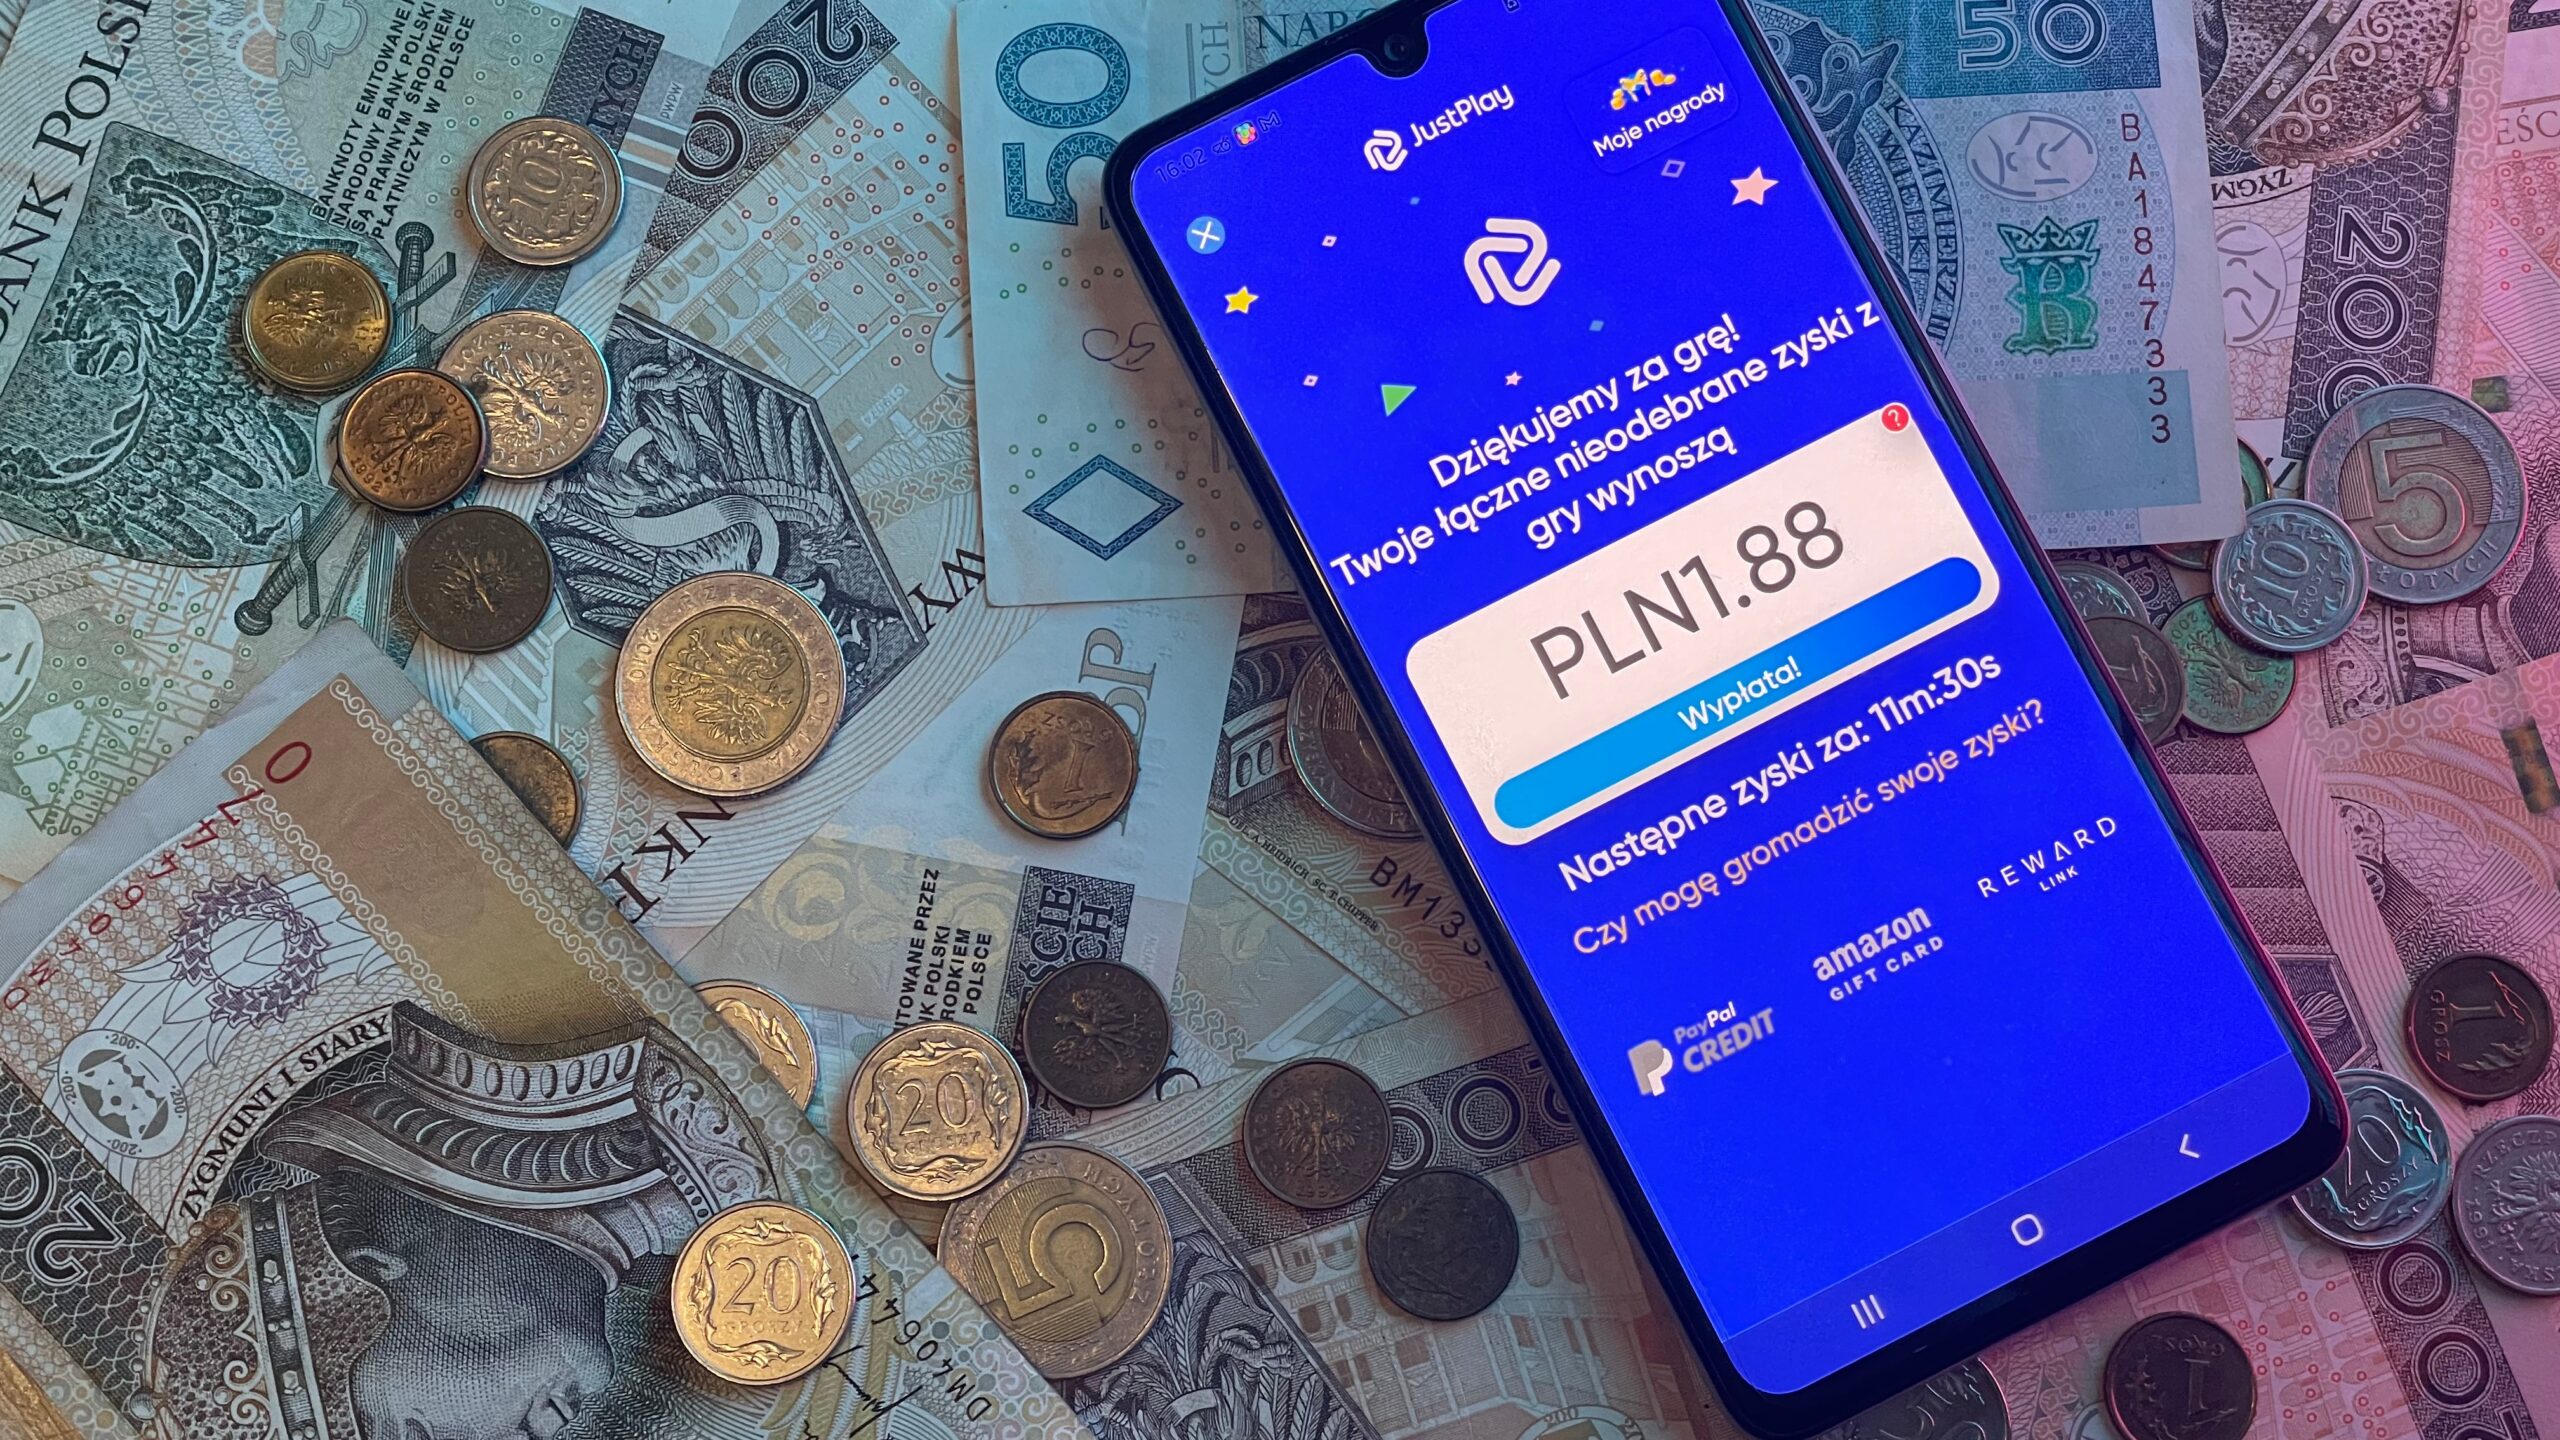 Smartfon leżący na polskich banknotach i monetach z otwartą aplikacją mobilną, która wyświetla komunikat o sumie wygranej 1,88 PLN.